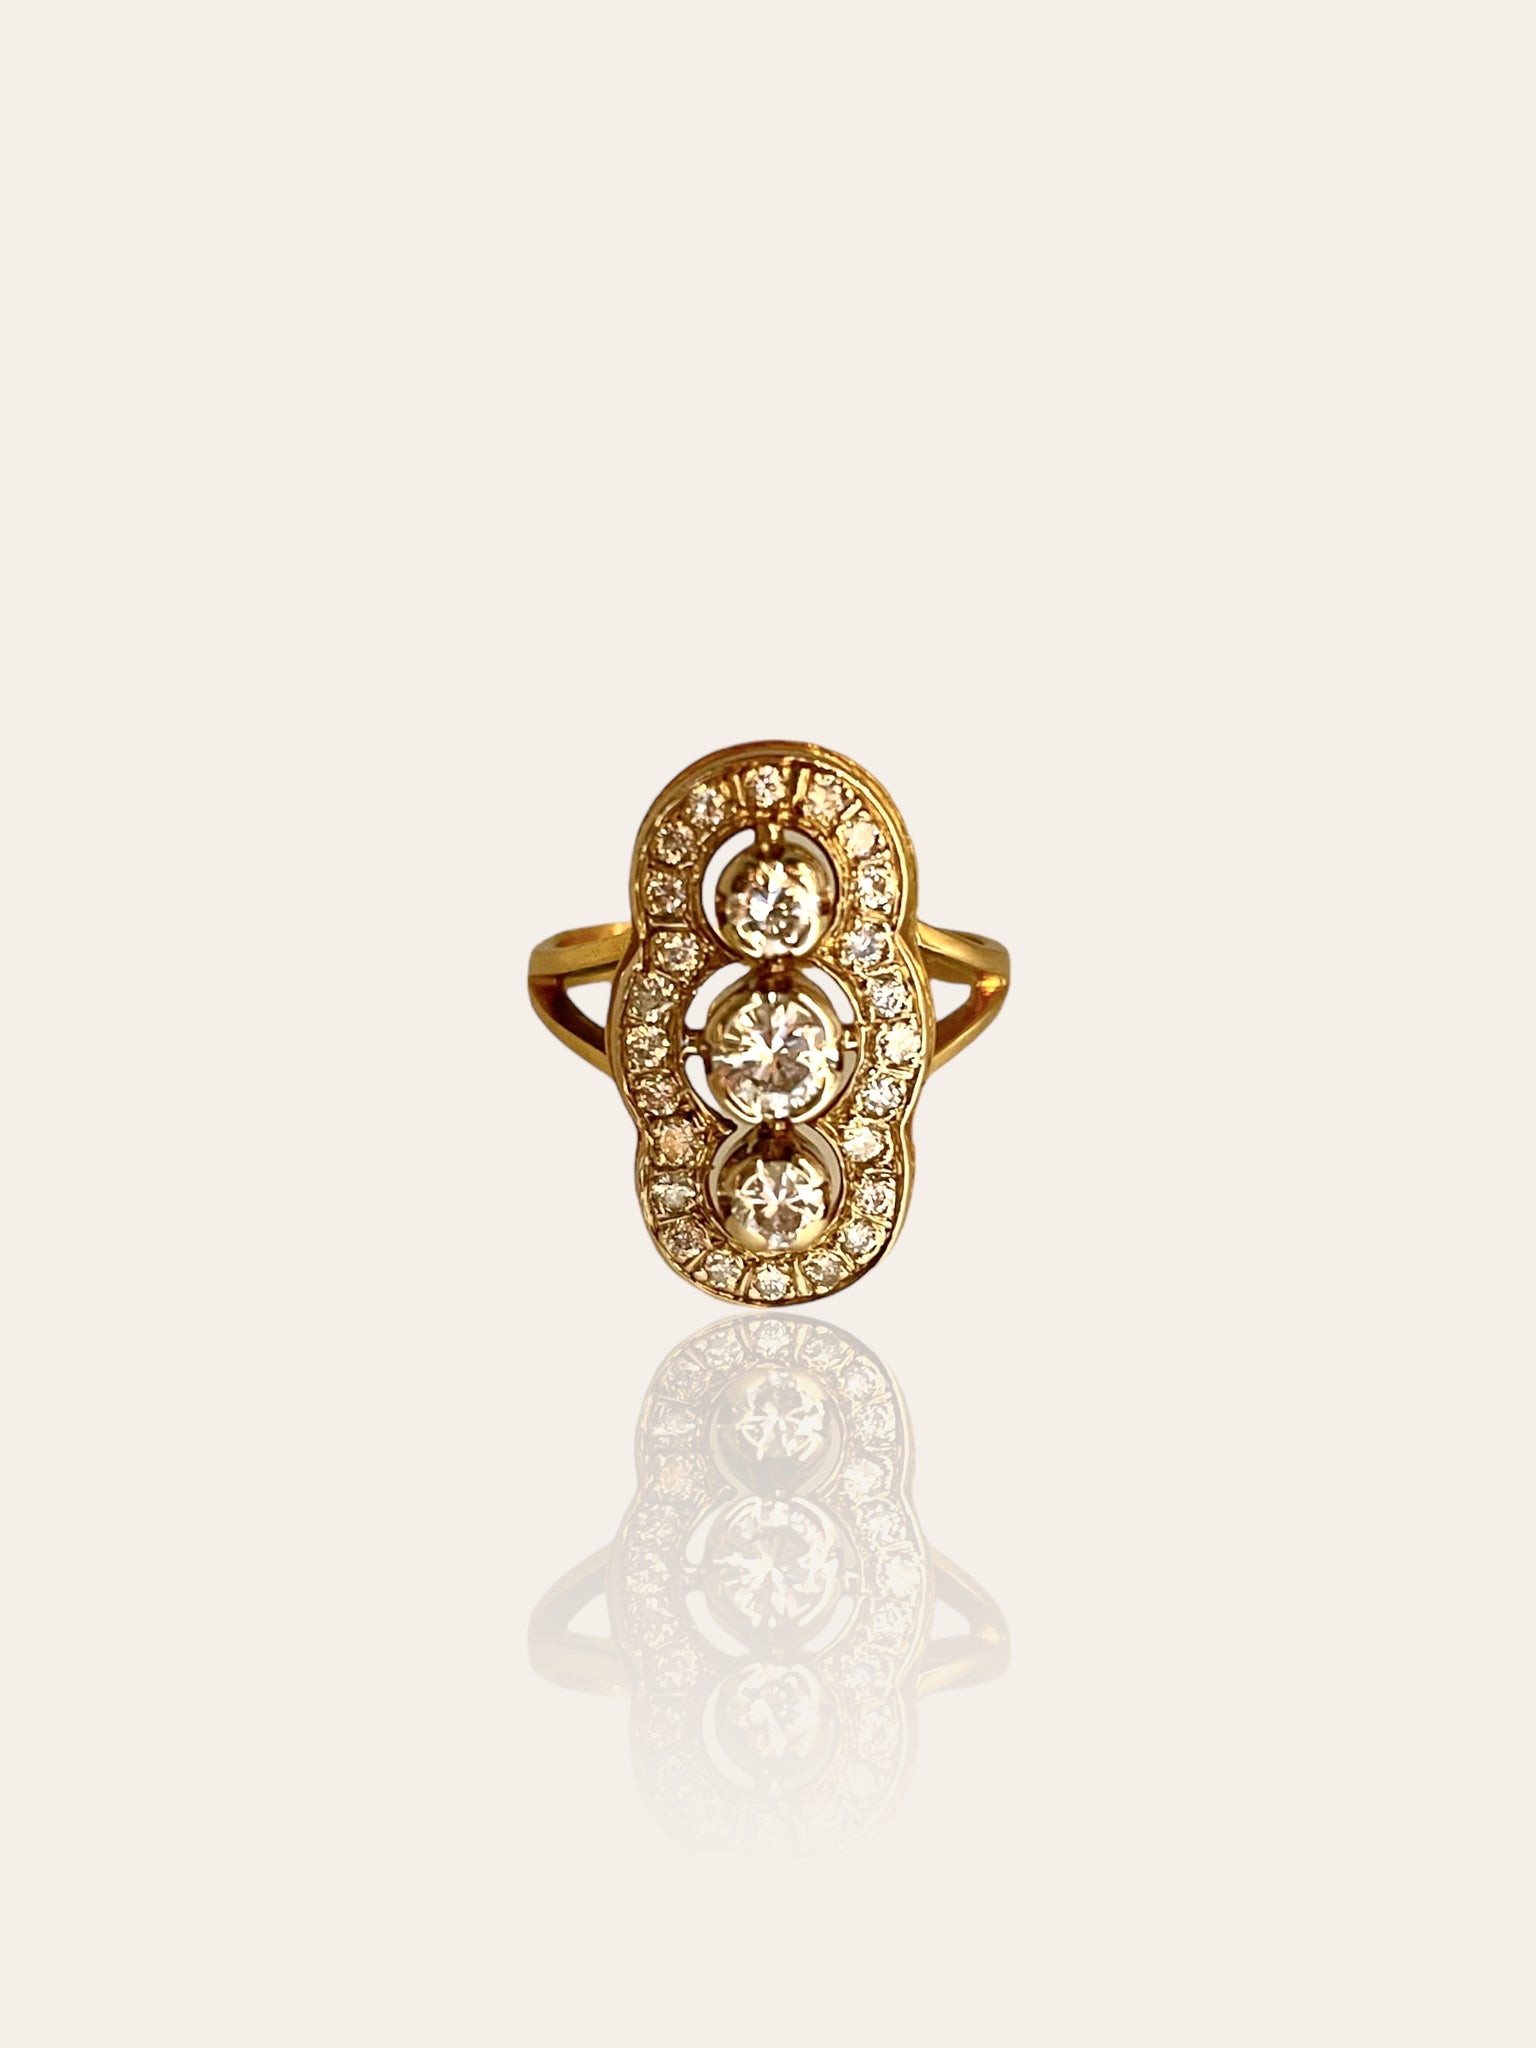 Art Deco 18K geelgouden Princess ring bezet met briljant geslepen diamanten